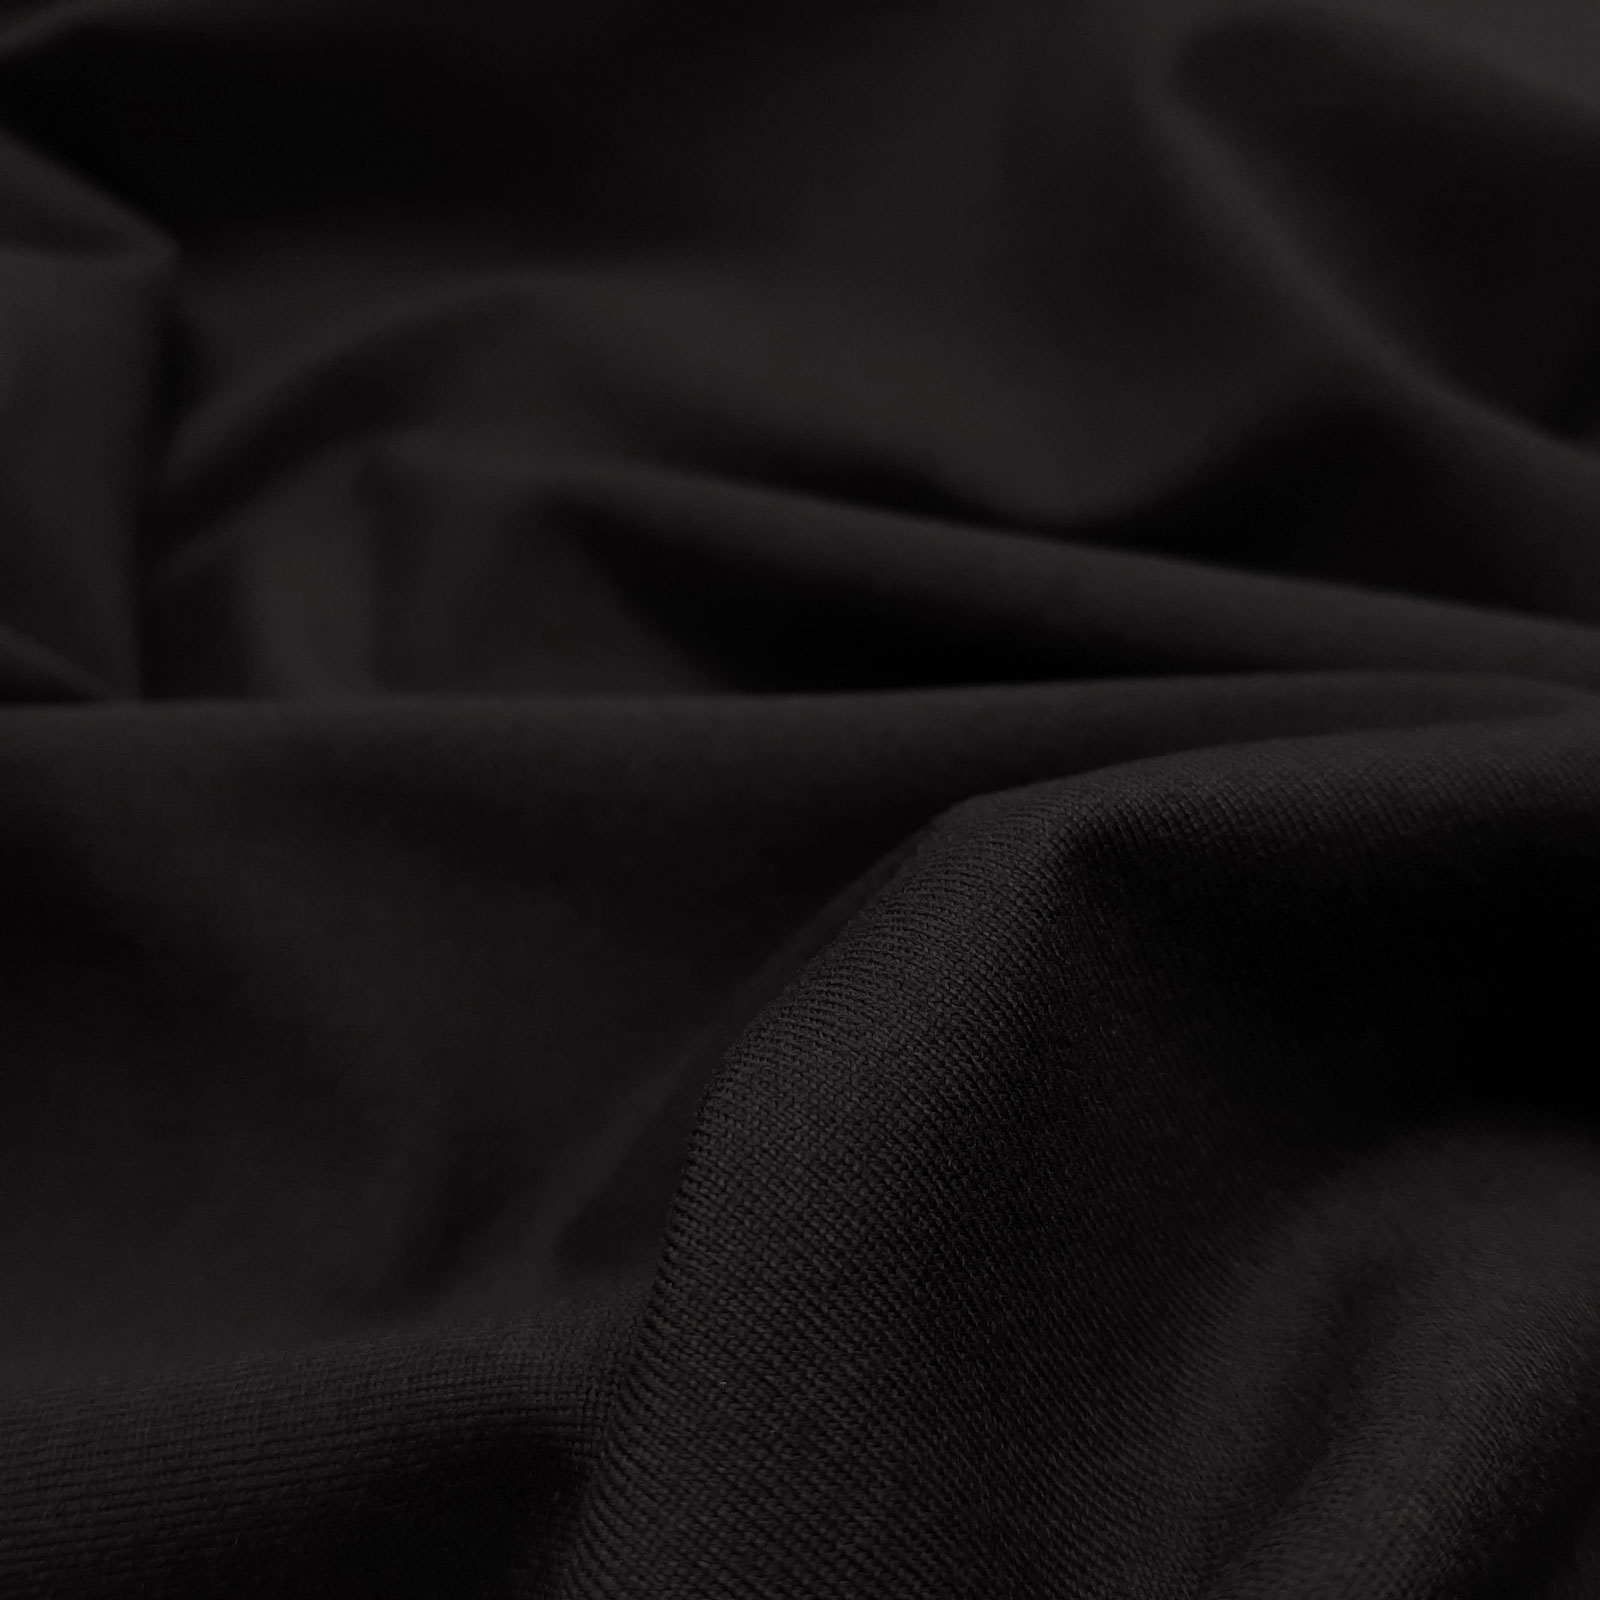 Junus - Merino jersey fino, grueso - Negro